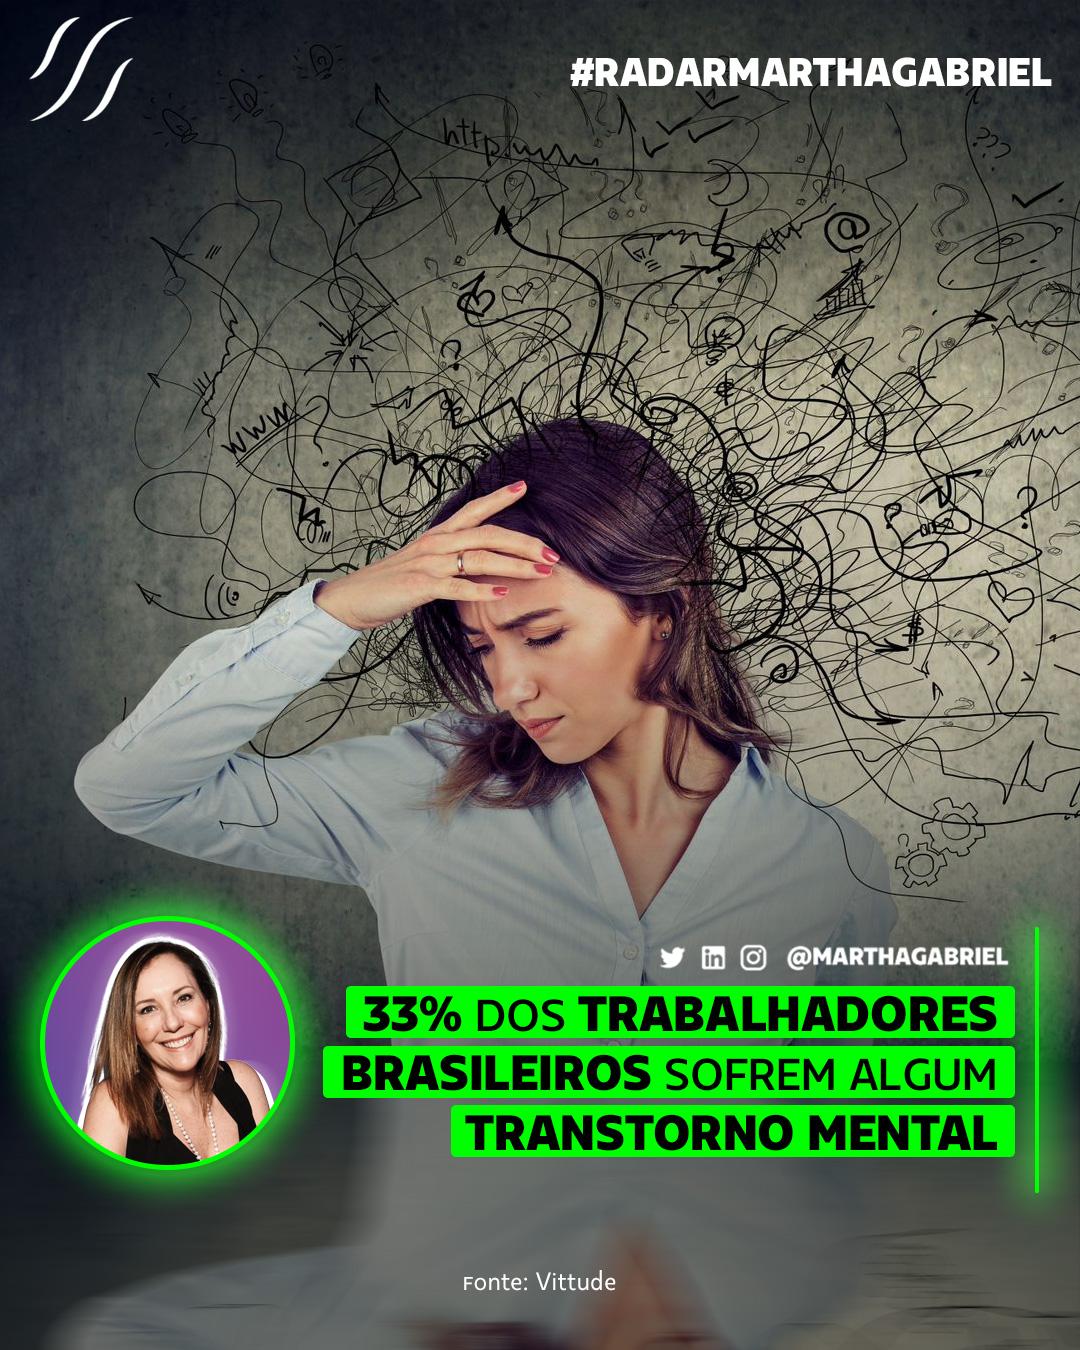 33% dos trabalhadores brasileiros sofrem algum transtorno mental